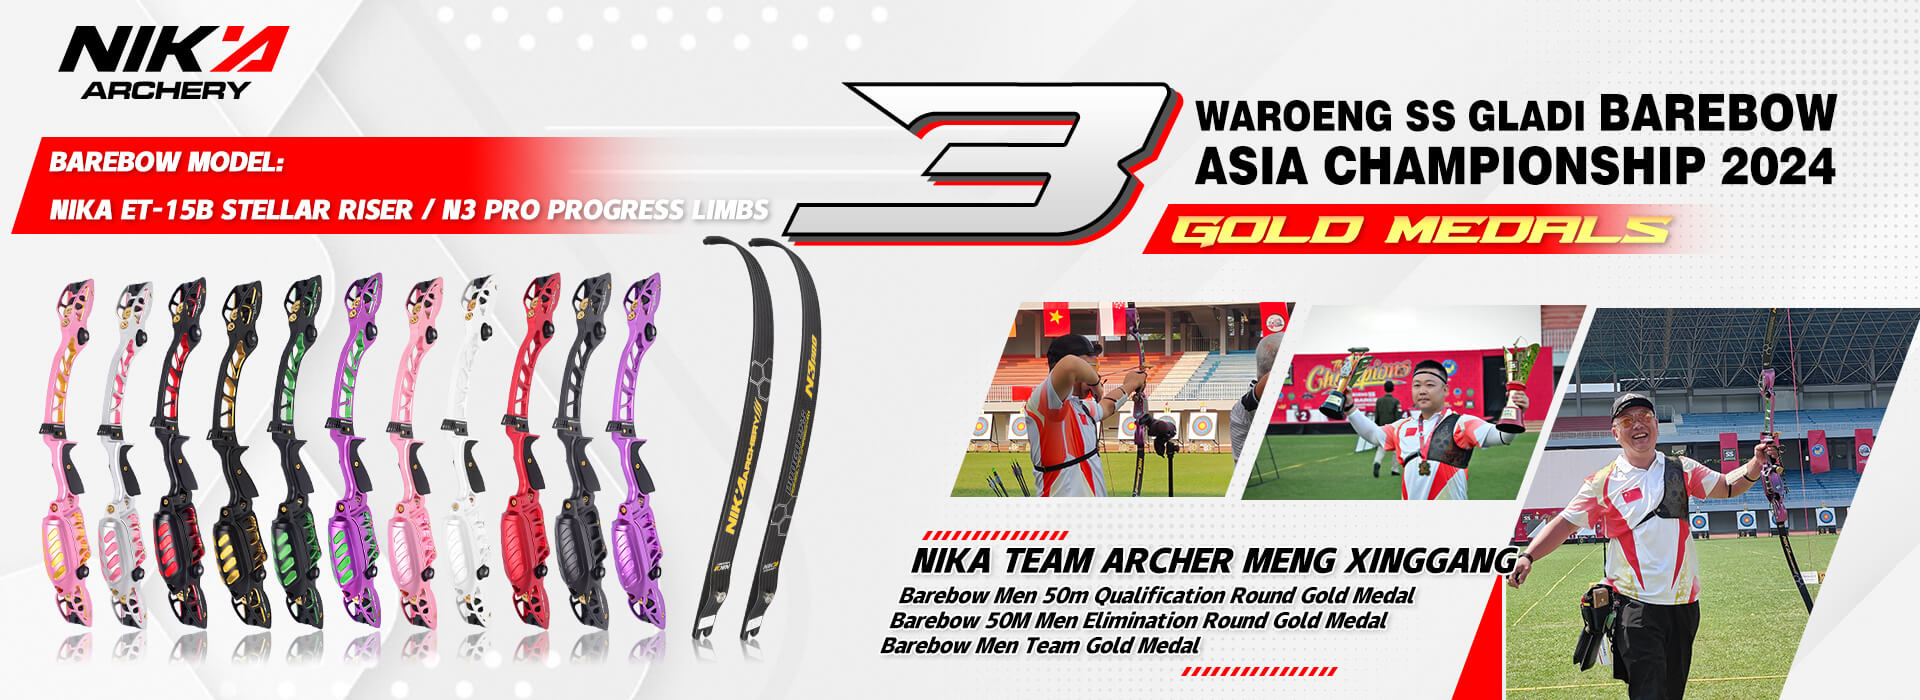 NIKA Archer Meng Xinggang Won 3 Golds at the Barebow Asia Championship 2024